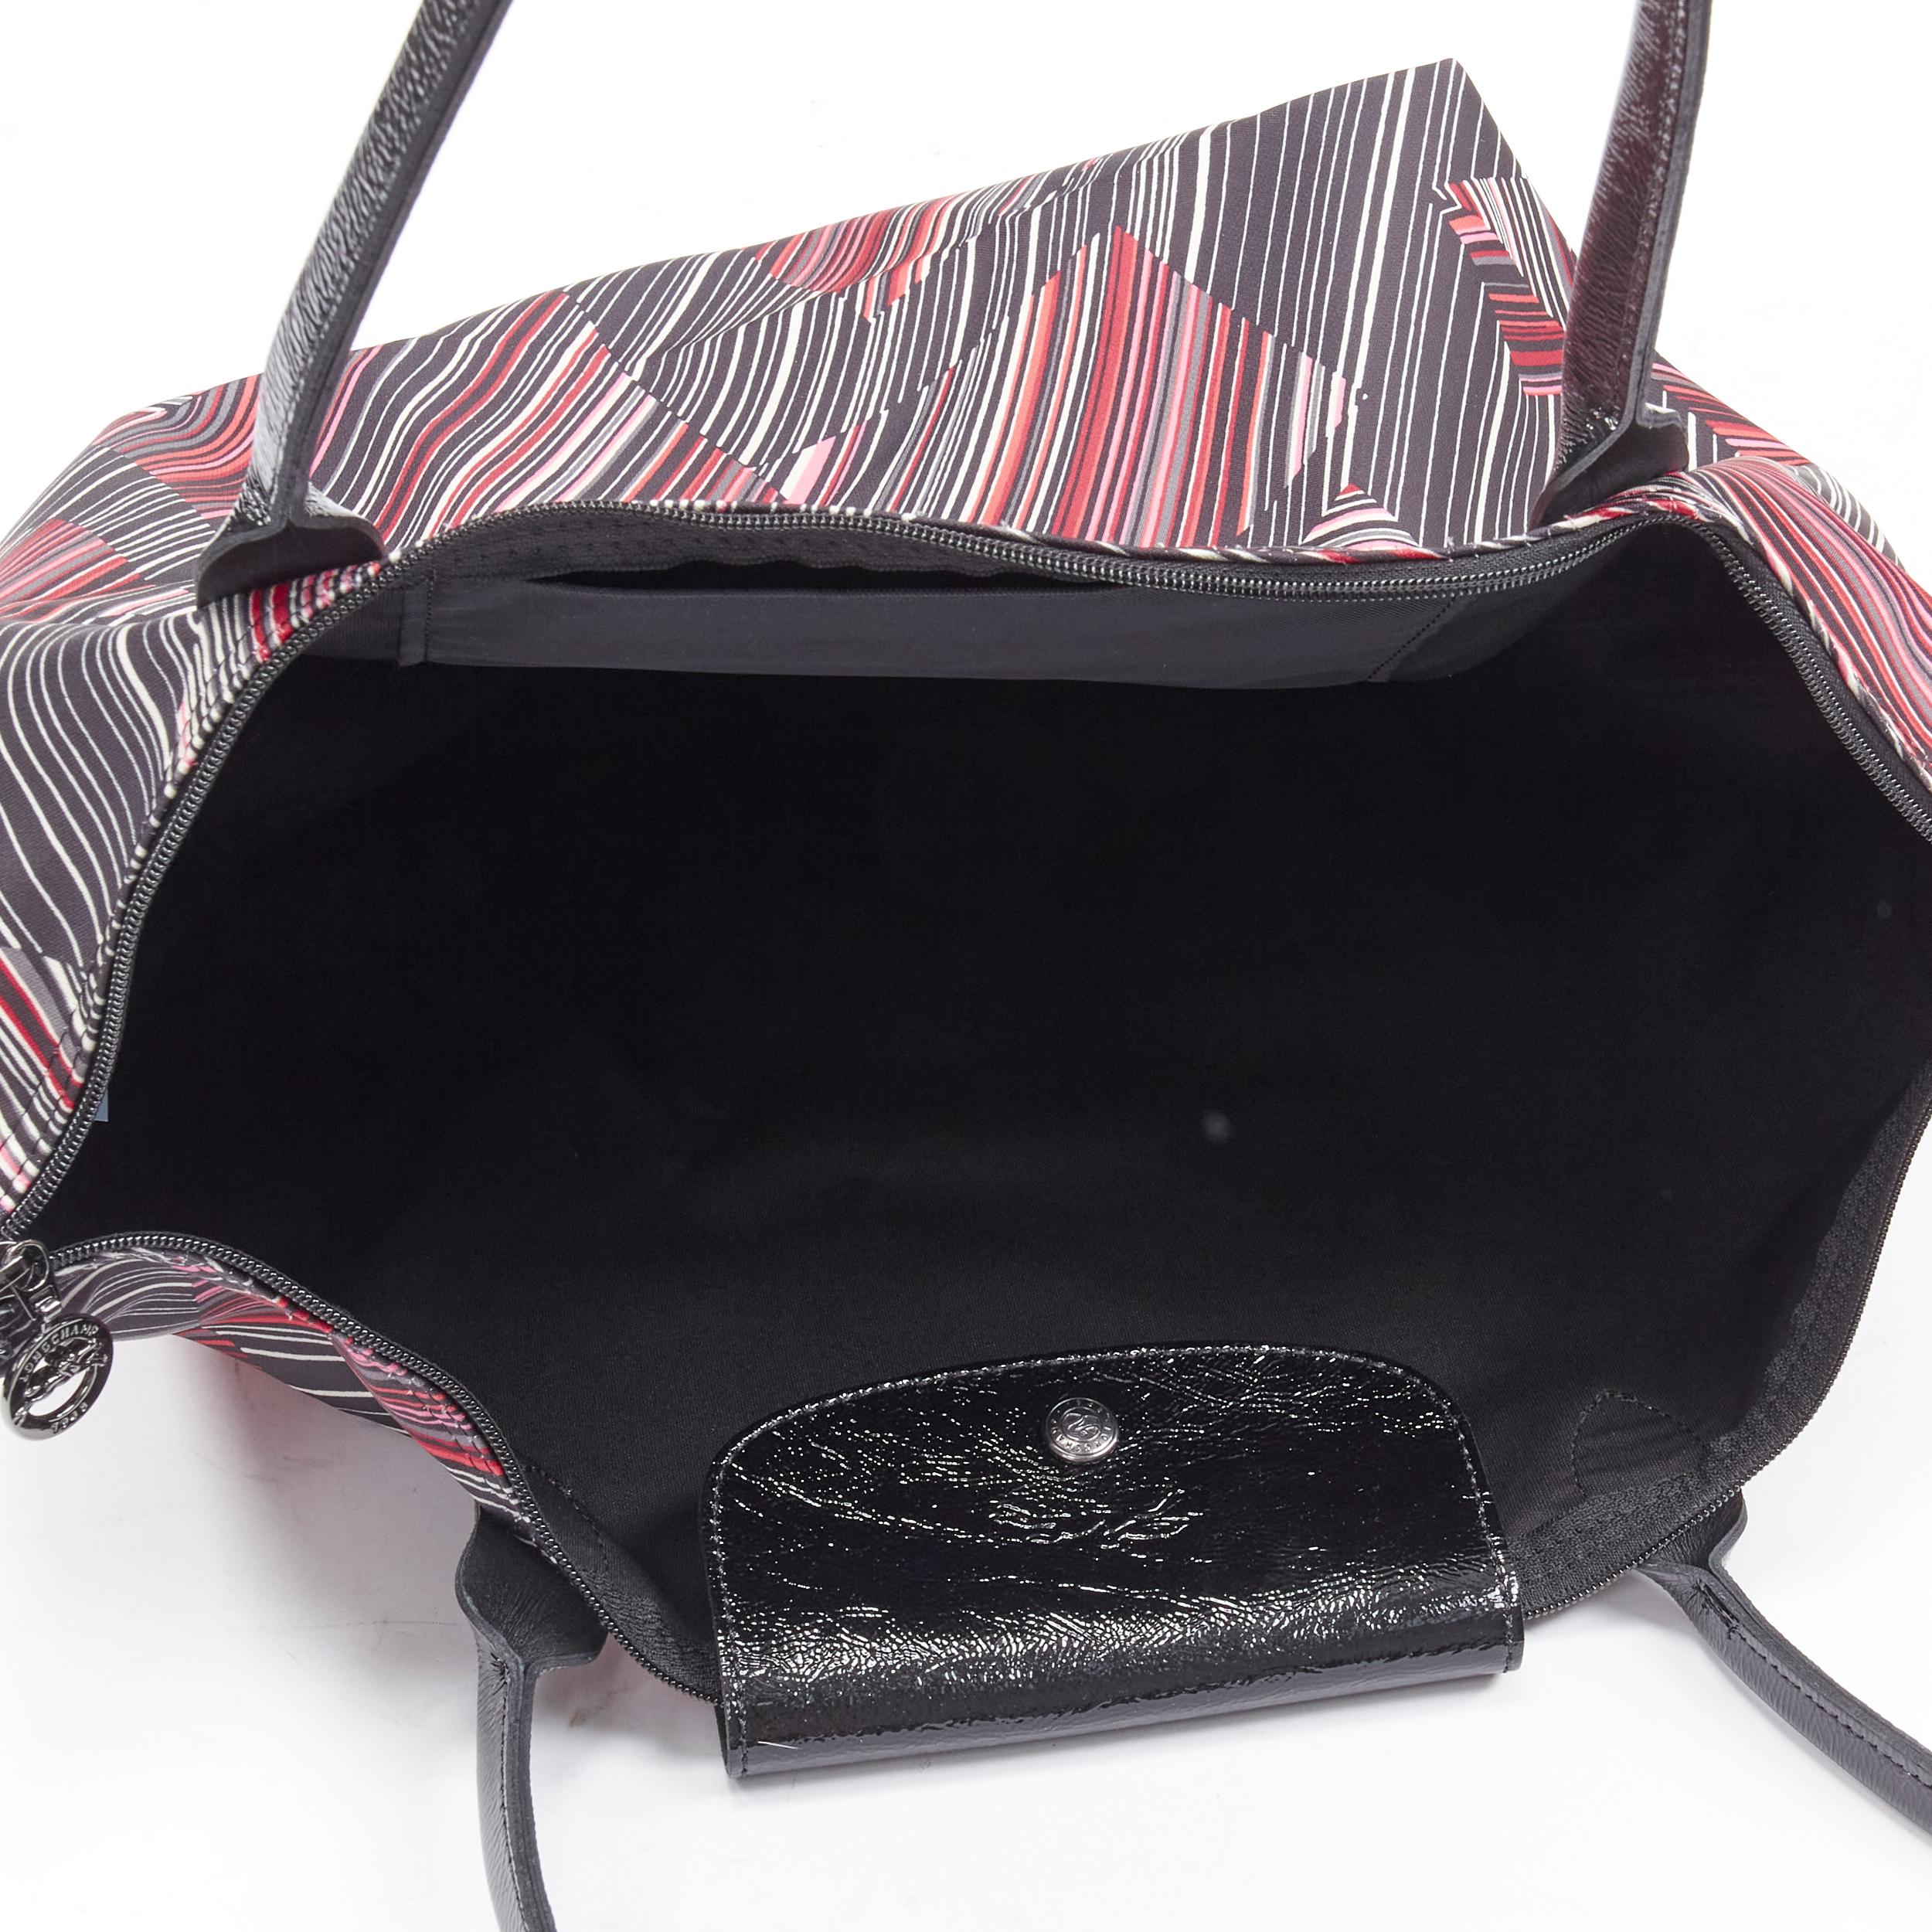 new LONGCHAMP La Pliage pink black geometric striped print nylon =-tote bag 1